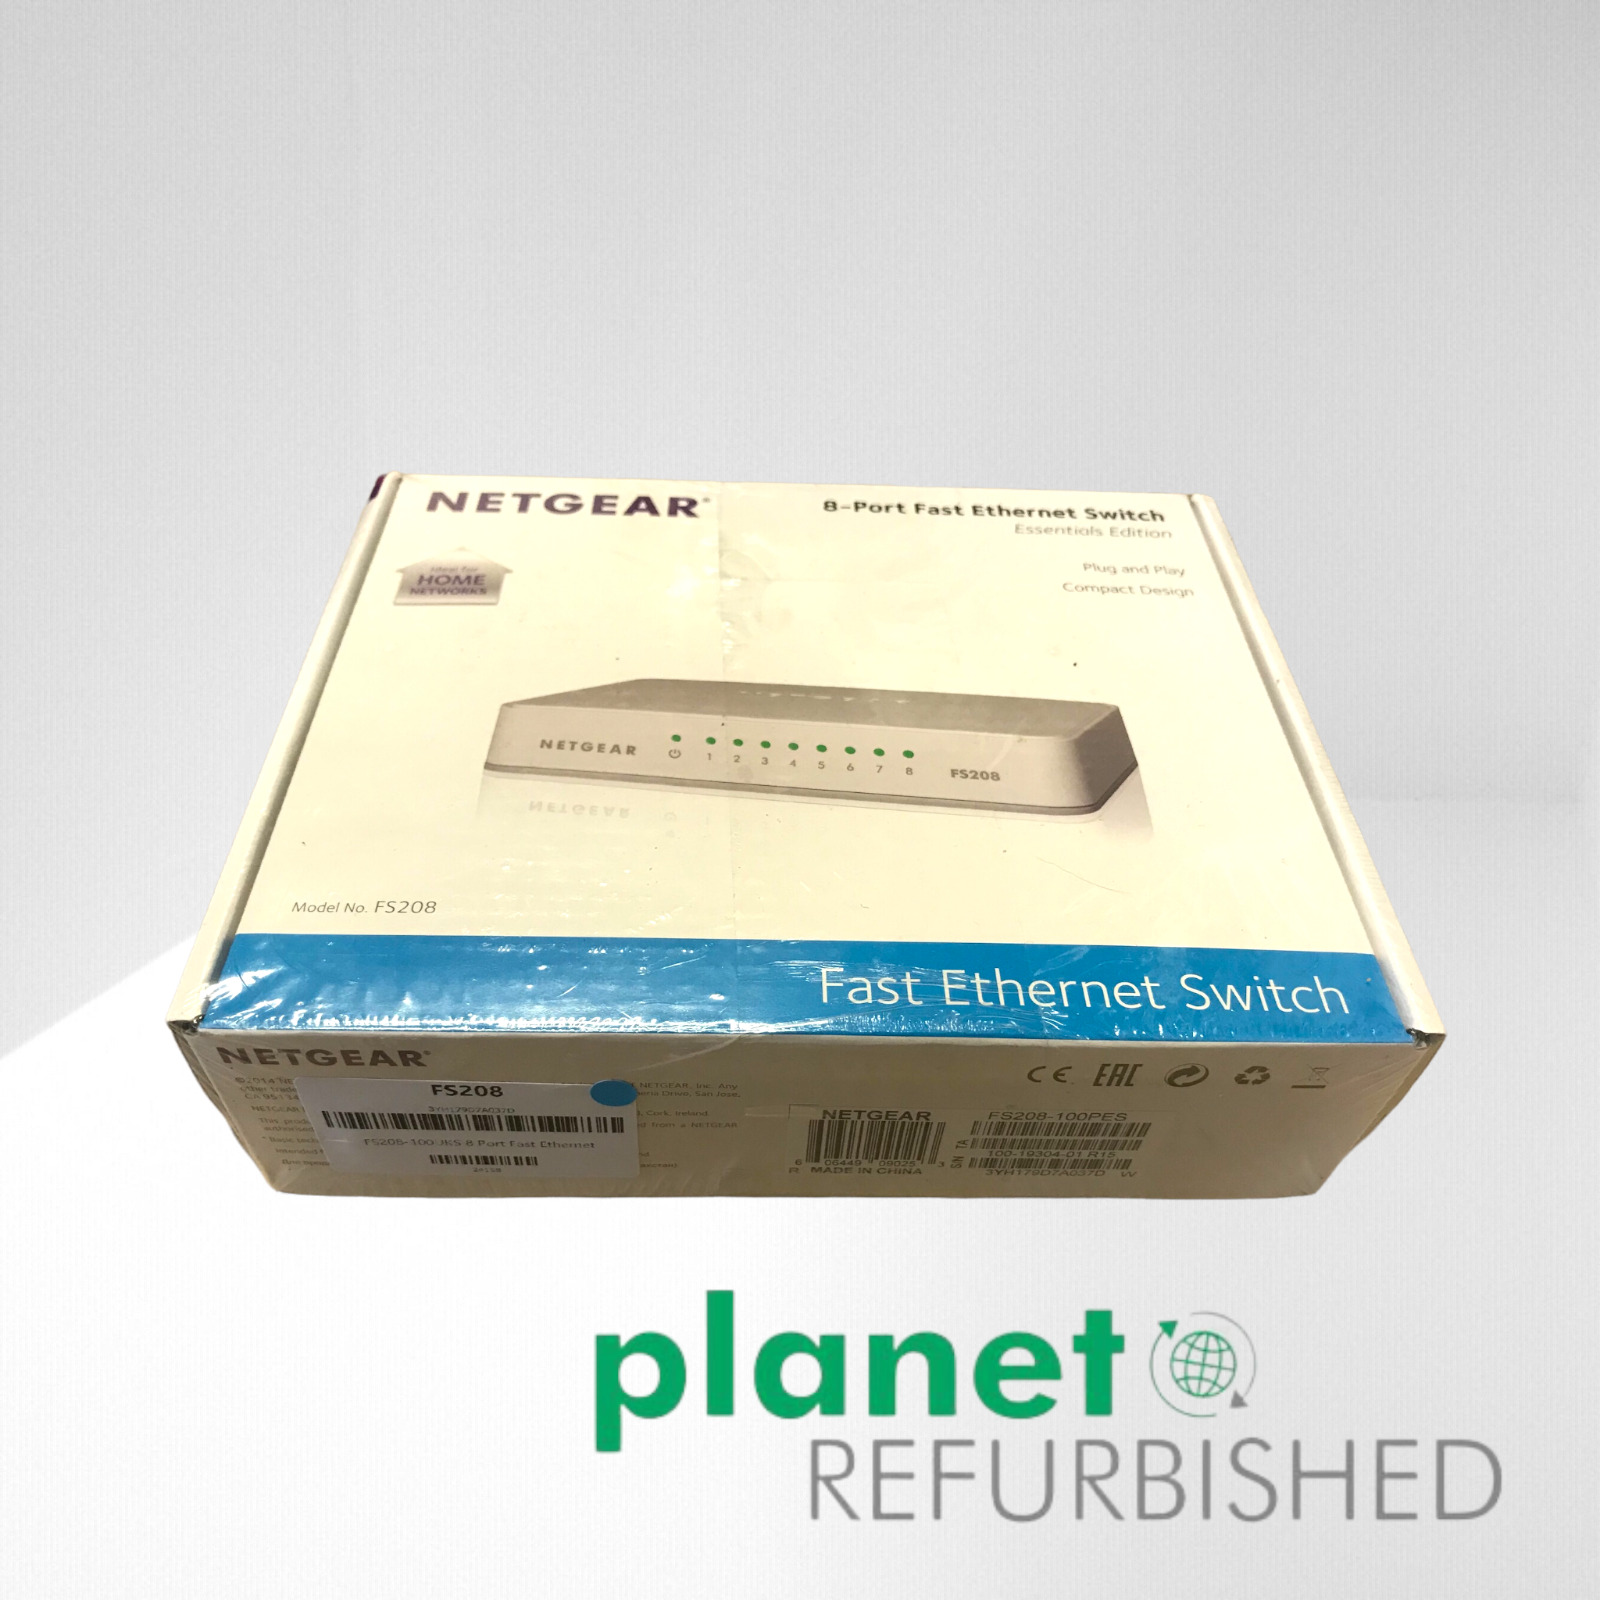 ✅ FS208 NETGEAR FS208-100UKS 8 Port Fast Ethernet 10/100 Mbps Switc